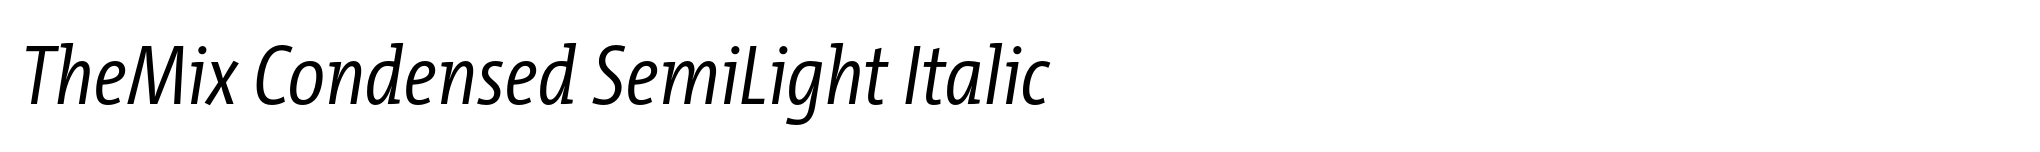 TheMix Condensed SemiLight Italic image